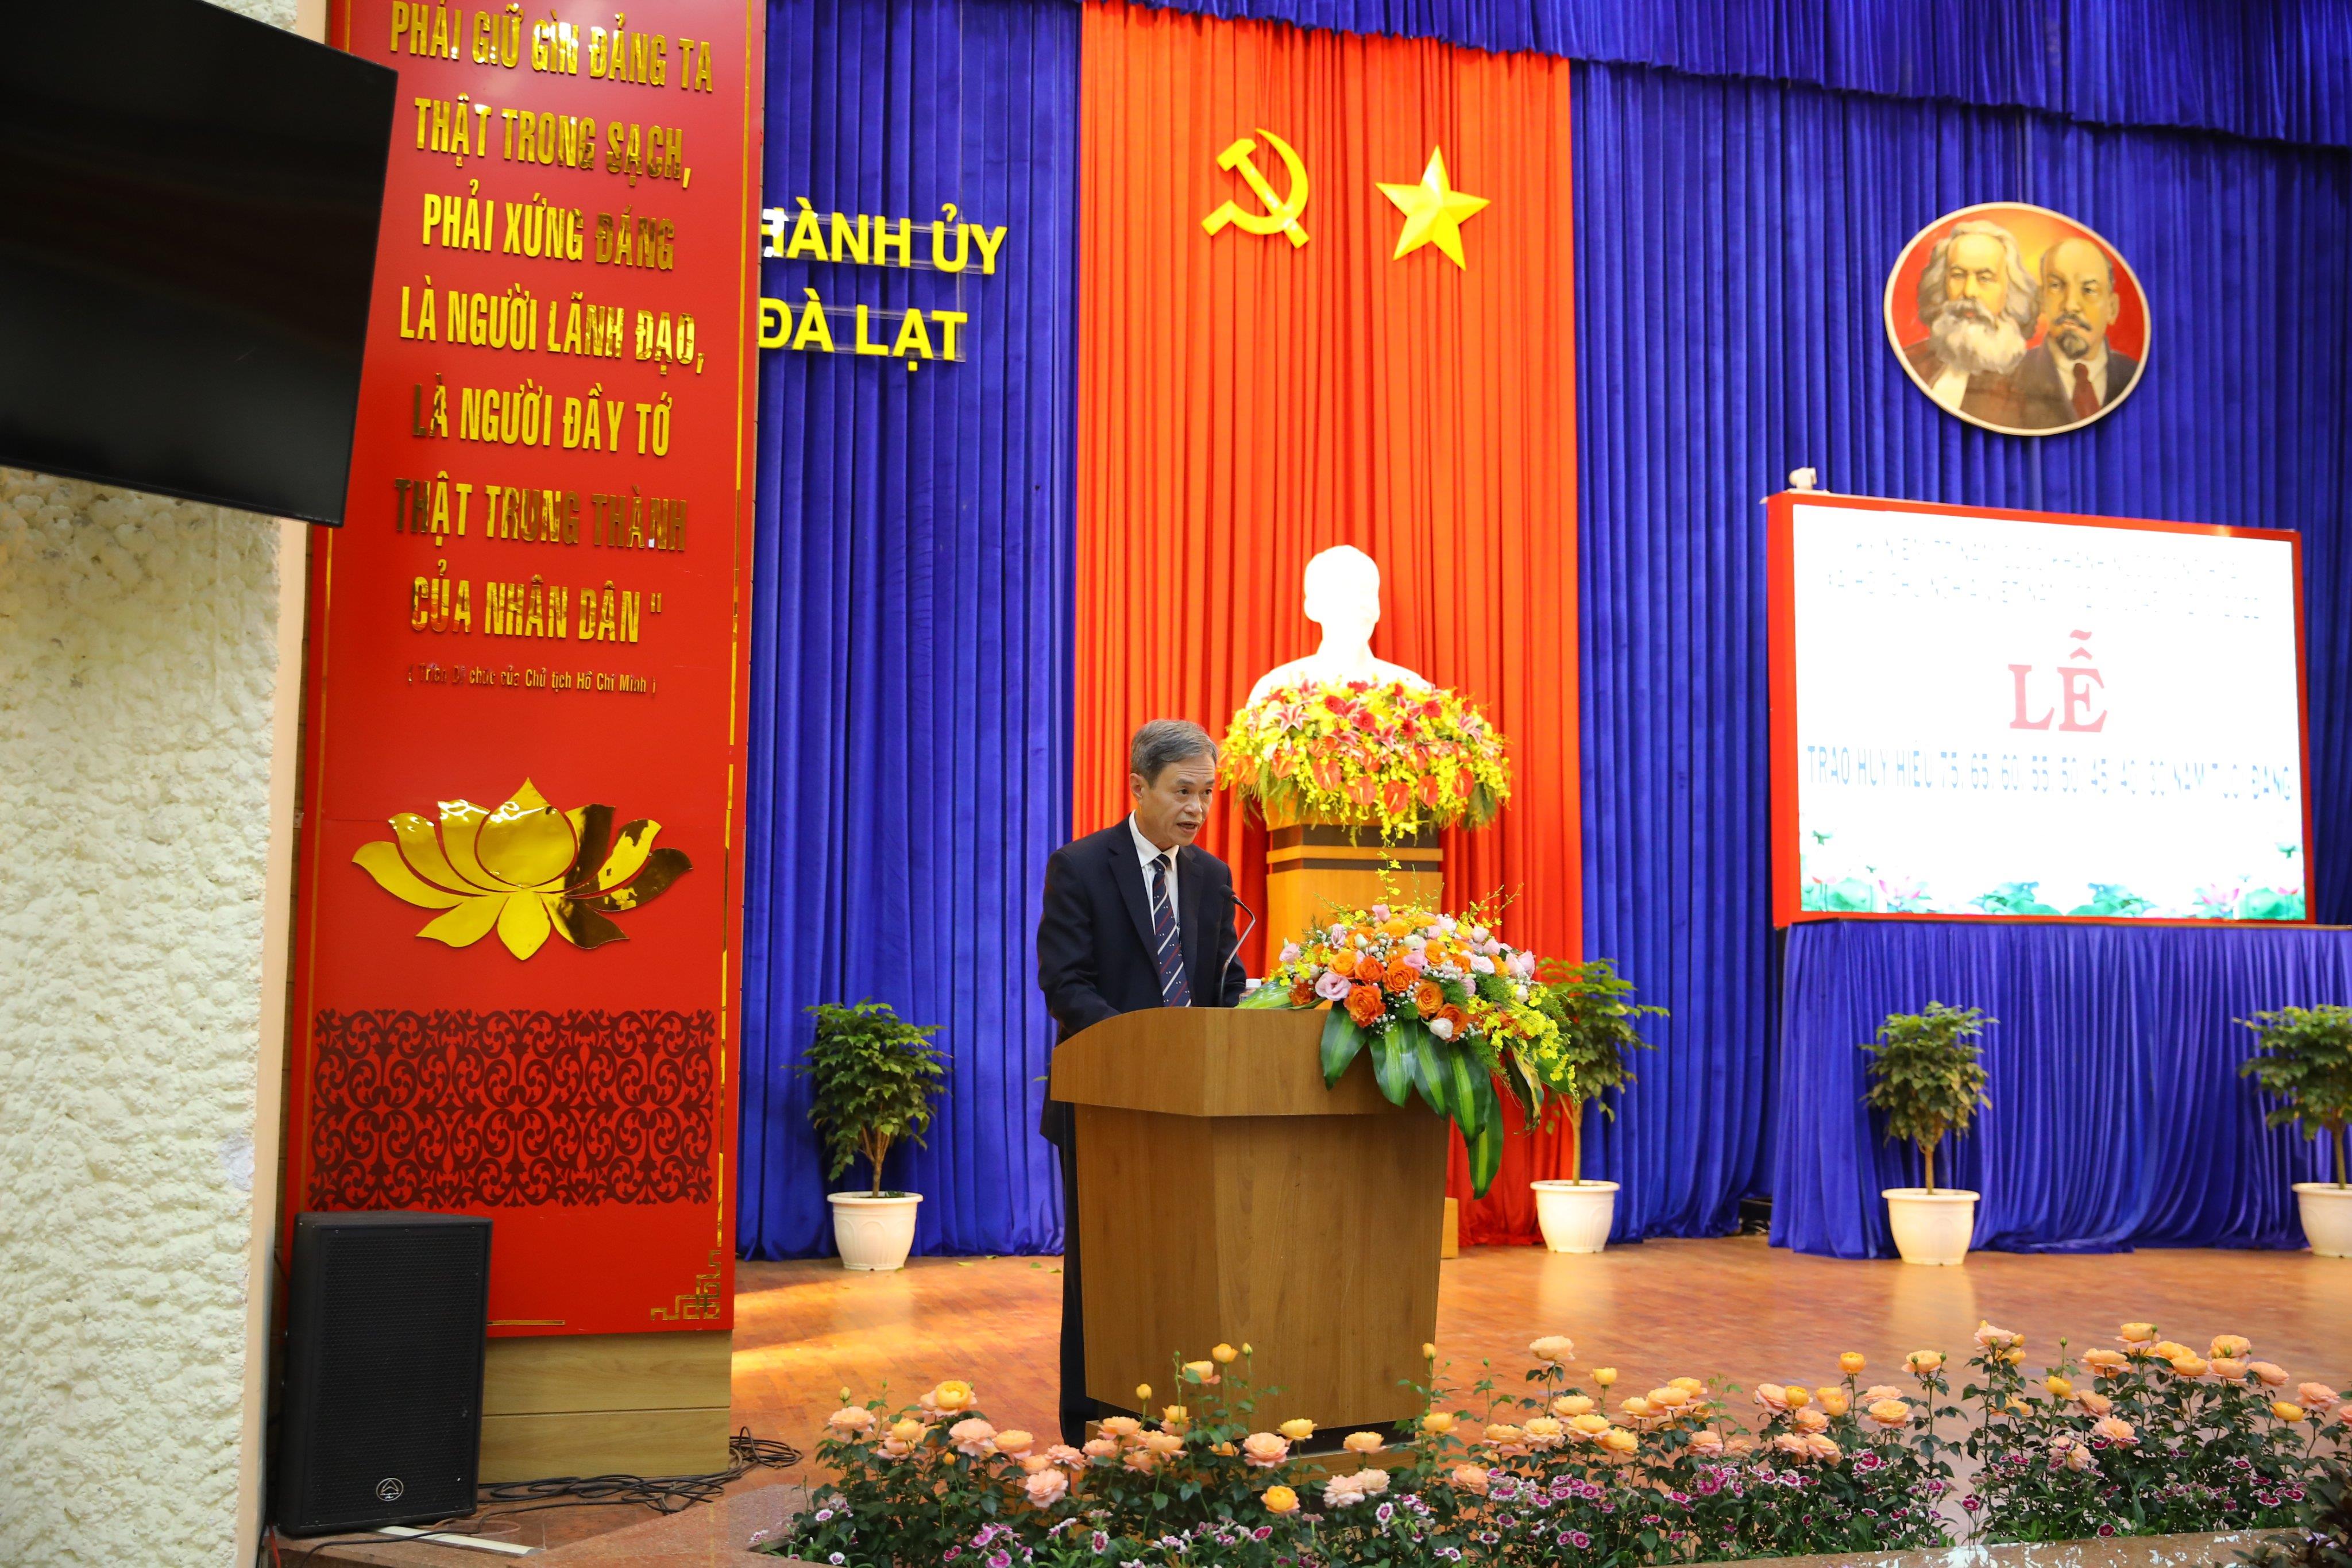 Đồng chí Trần Duy Hùng - Ủy viên Ban Thường vụ Tỉnh ủy, Bí thư Thành ủy, Chủ tịch HĐND thành phố Đà Lạt phát biểu tại buổi lễ trao Huy hiệu Đảng